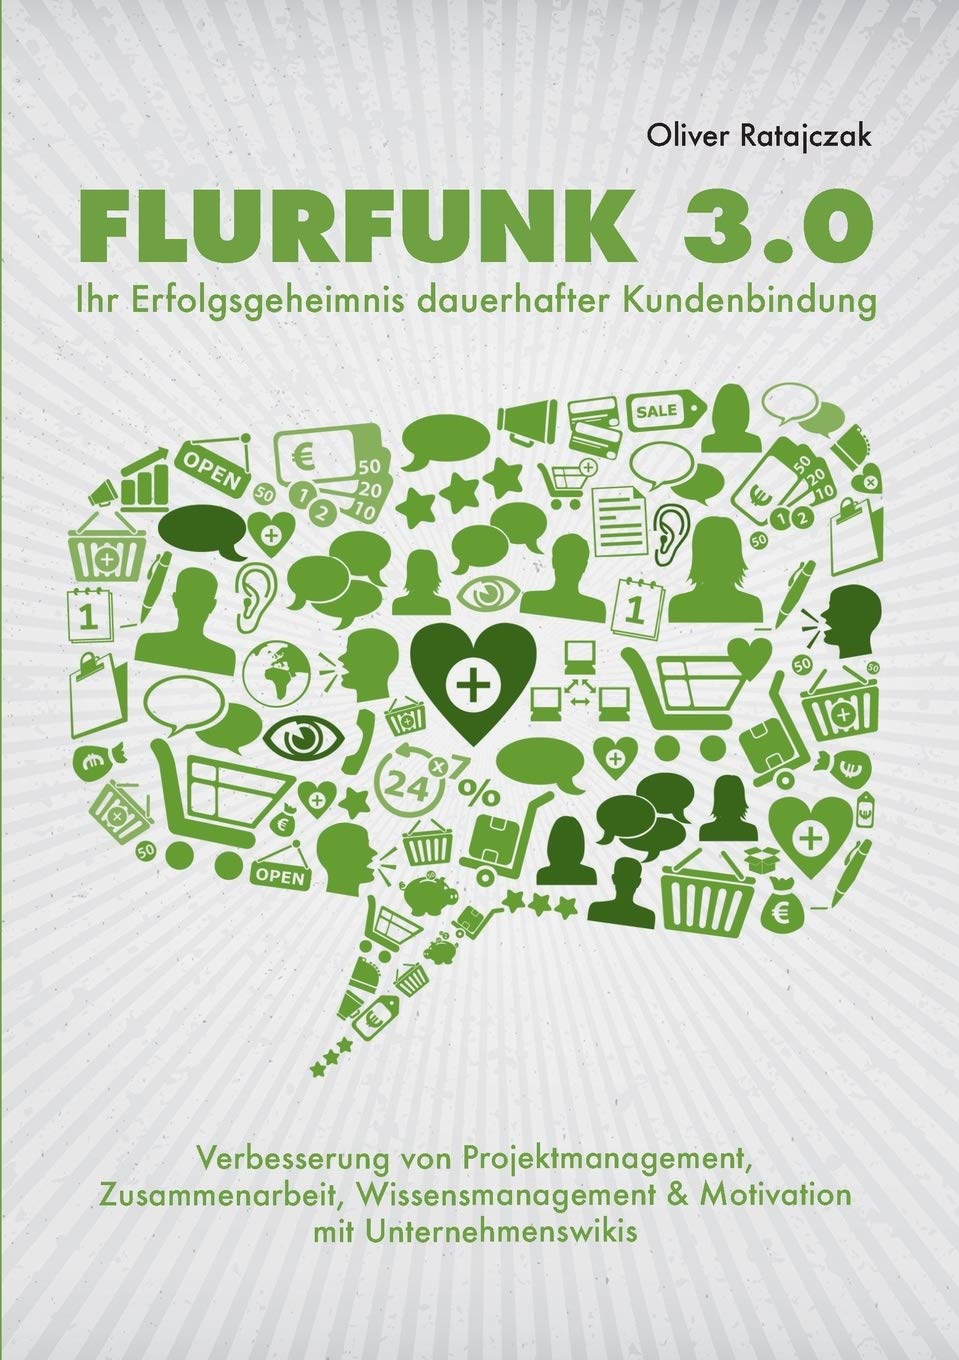 Flurfunk 3.0 - Ihr Erfolgsgeheimnis dauerhafter Kundenbindung: Verbesserung von Projektmanagement, Zusammenarbeit, Wissensmanagement & Motivation mit Unternehmenswikis